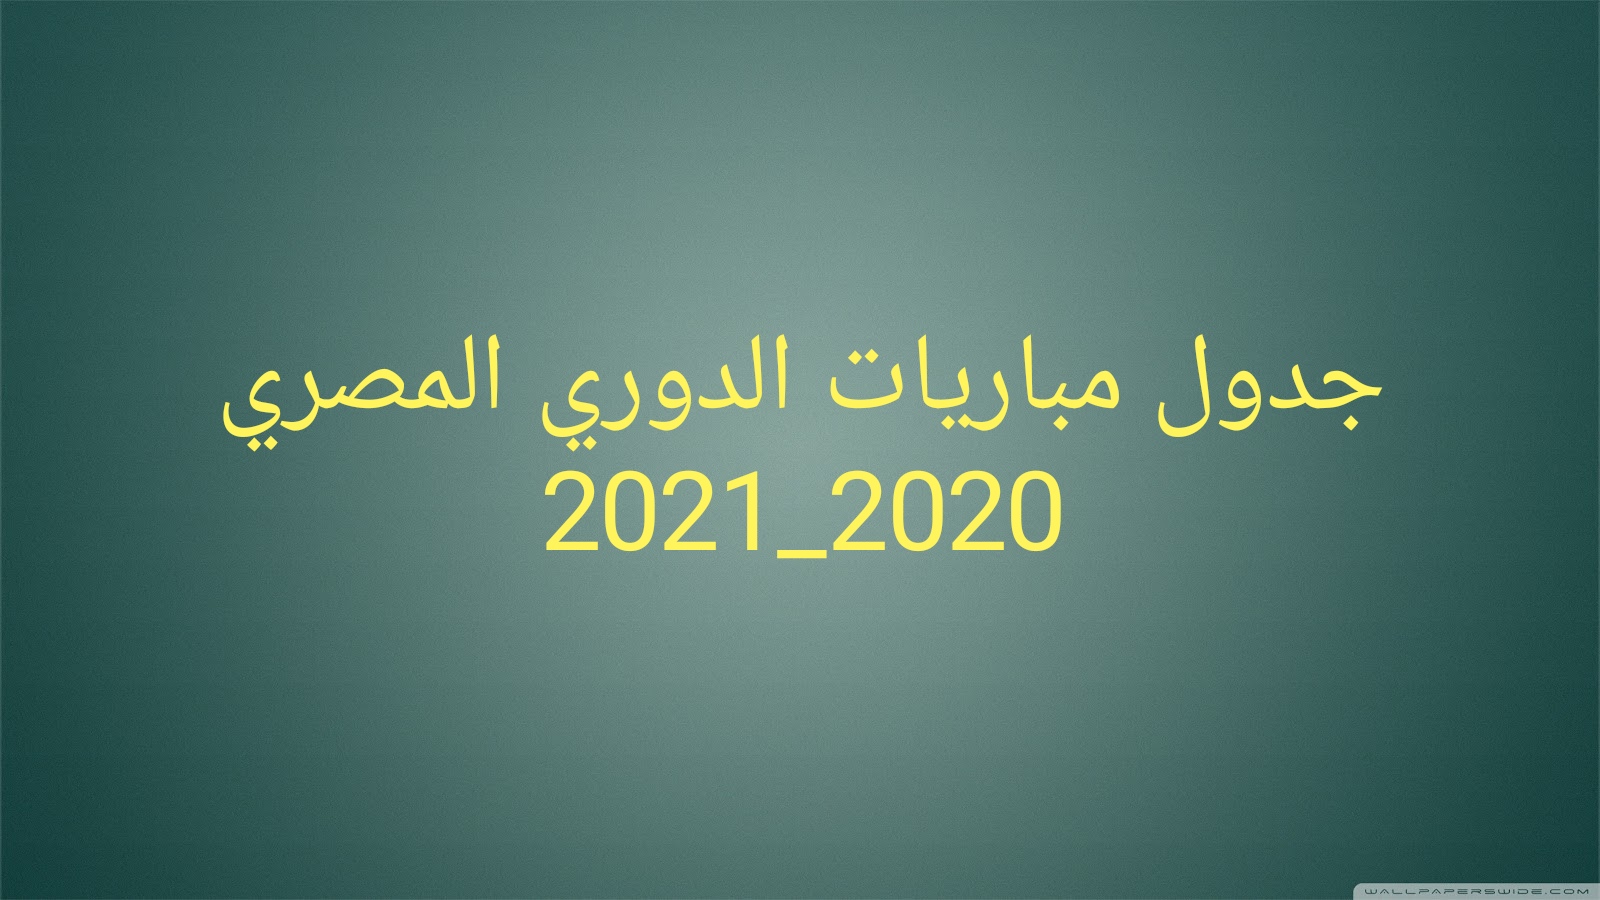 جدول مباريات الدوري المصري  2020-2021(تحديث يومي )